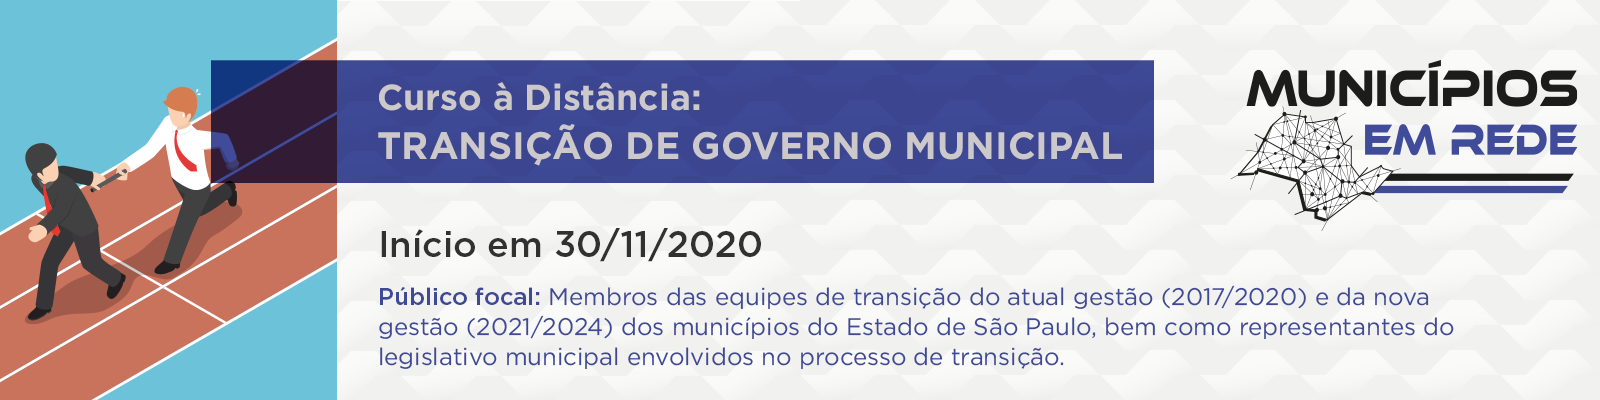 Banner - Transição de Governo